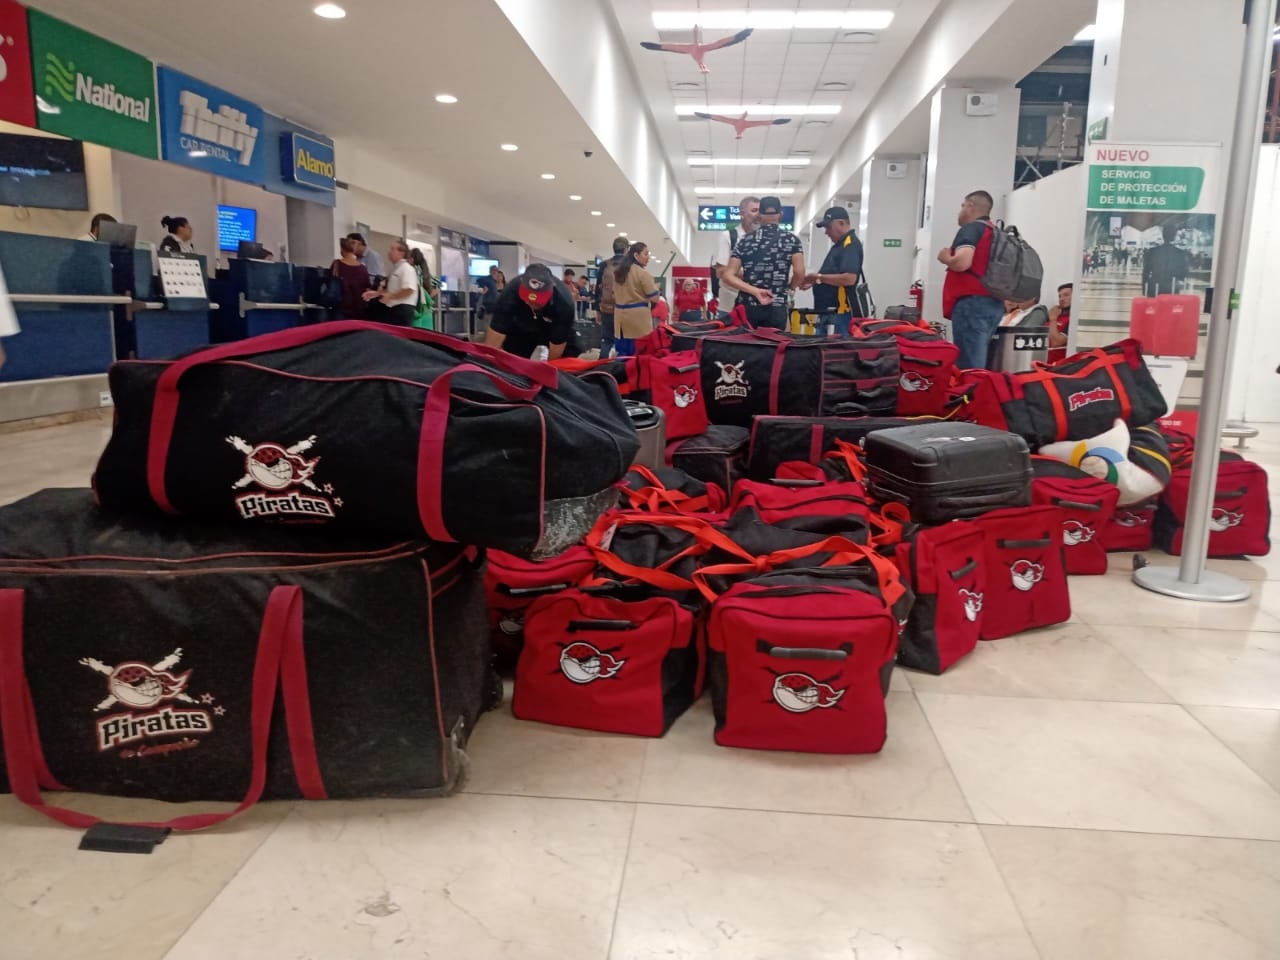 Piratas de Campeche 'abandonan' sus maletas en el aeropuerto de Mérida